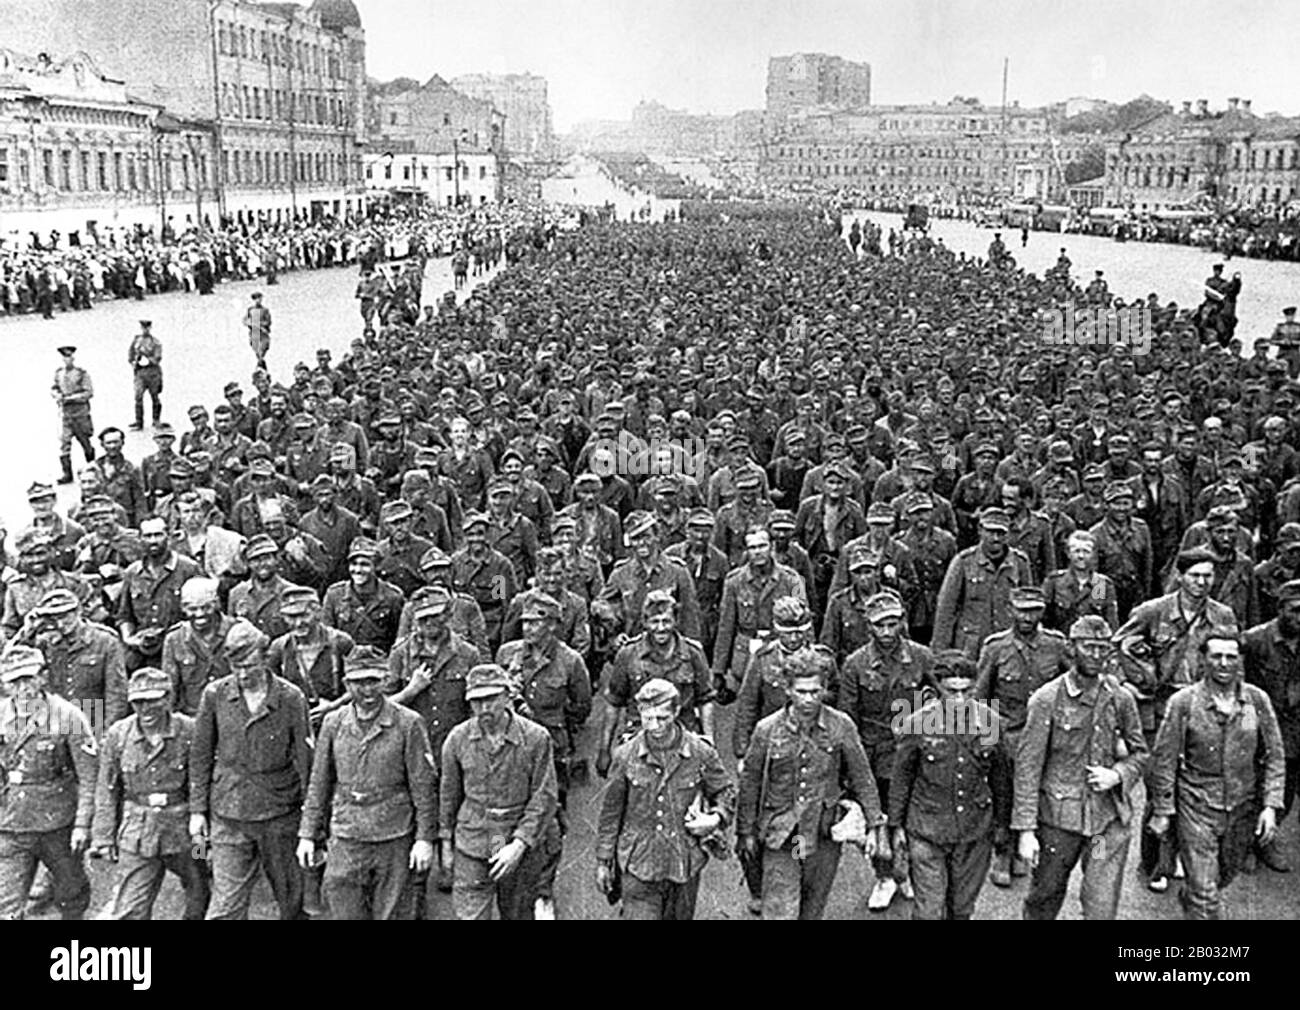 La bataille de Stalingrad (23 août 1942 – 2 février 1943) a été une grande  bataille contre le front oriental de la seconde Guerre mondiale dans  laquelle l'Allemagne nazie et ses alliés